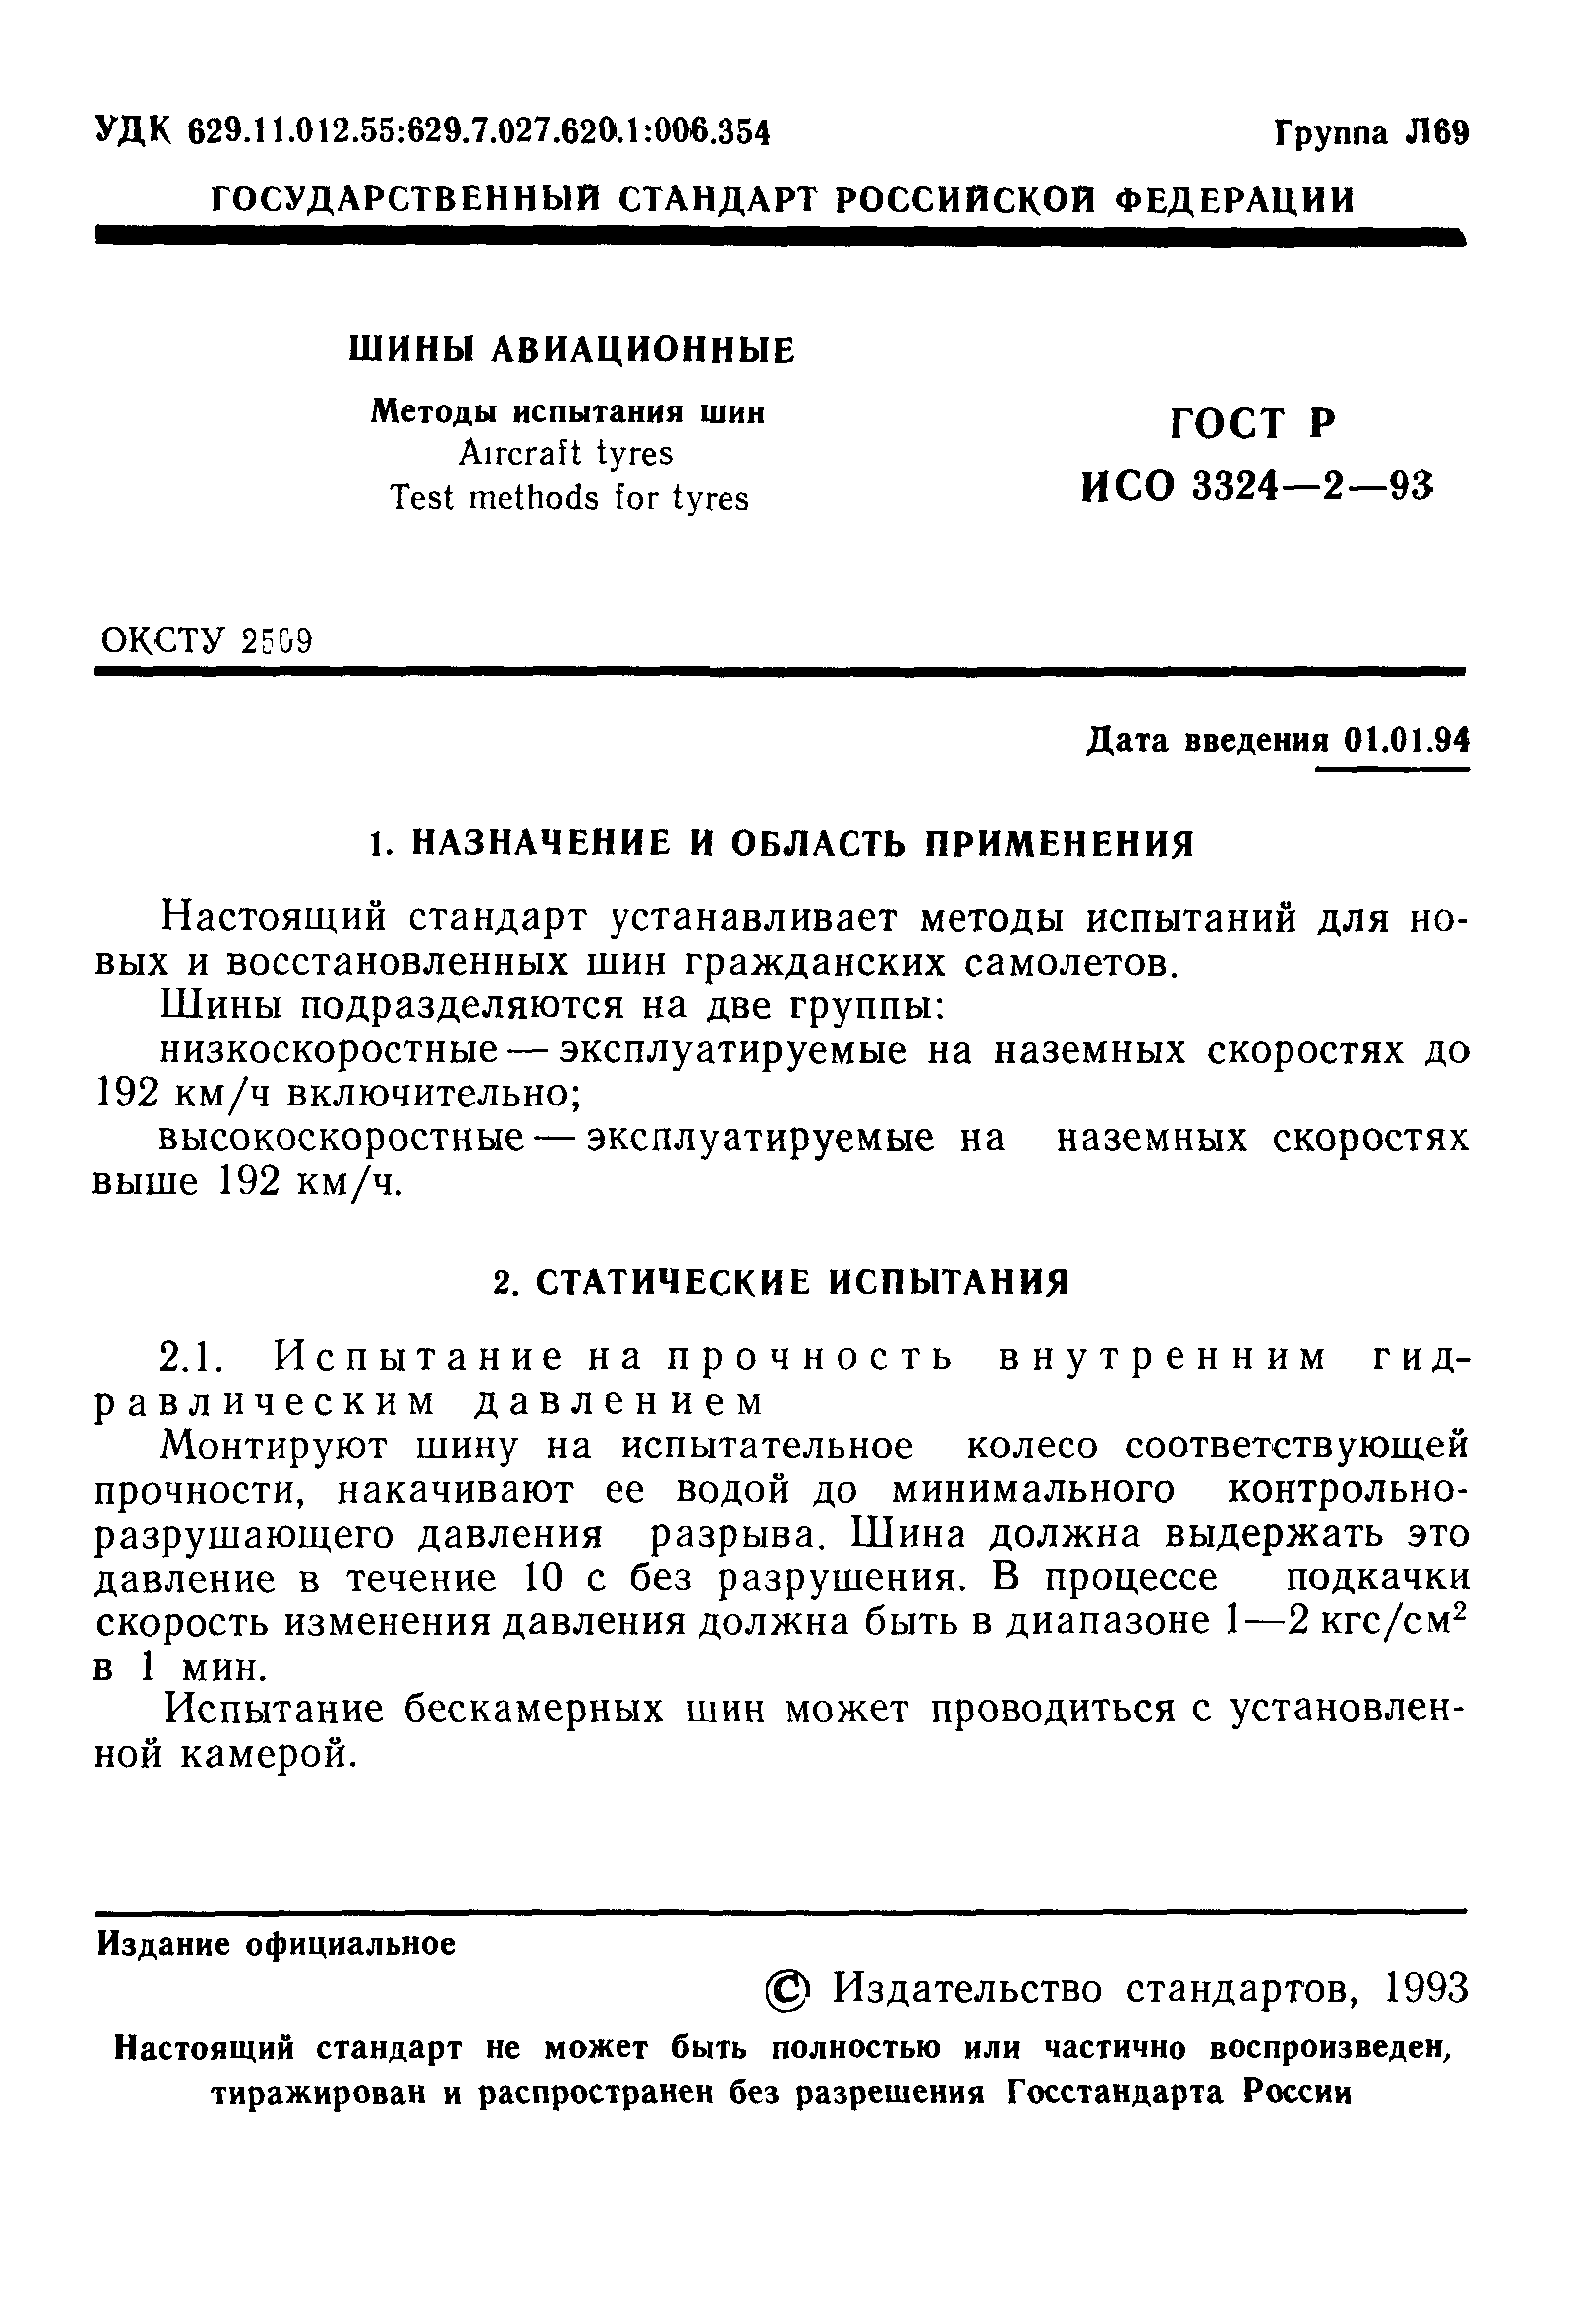 ГОСТ Р ИСО 3324-2-93